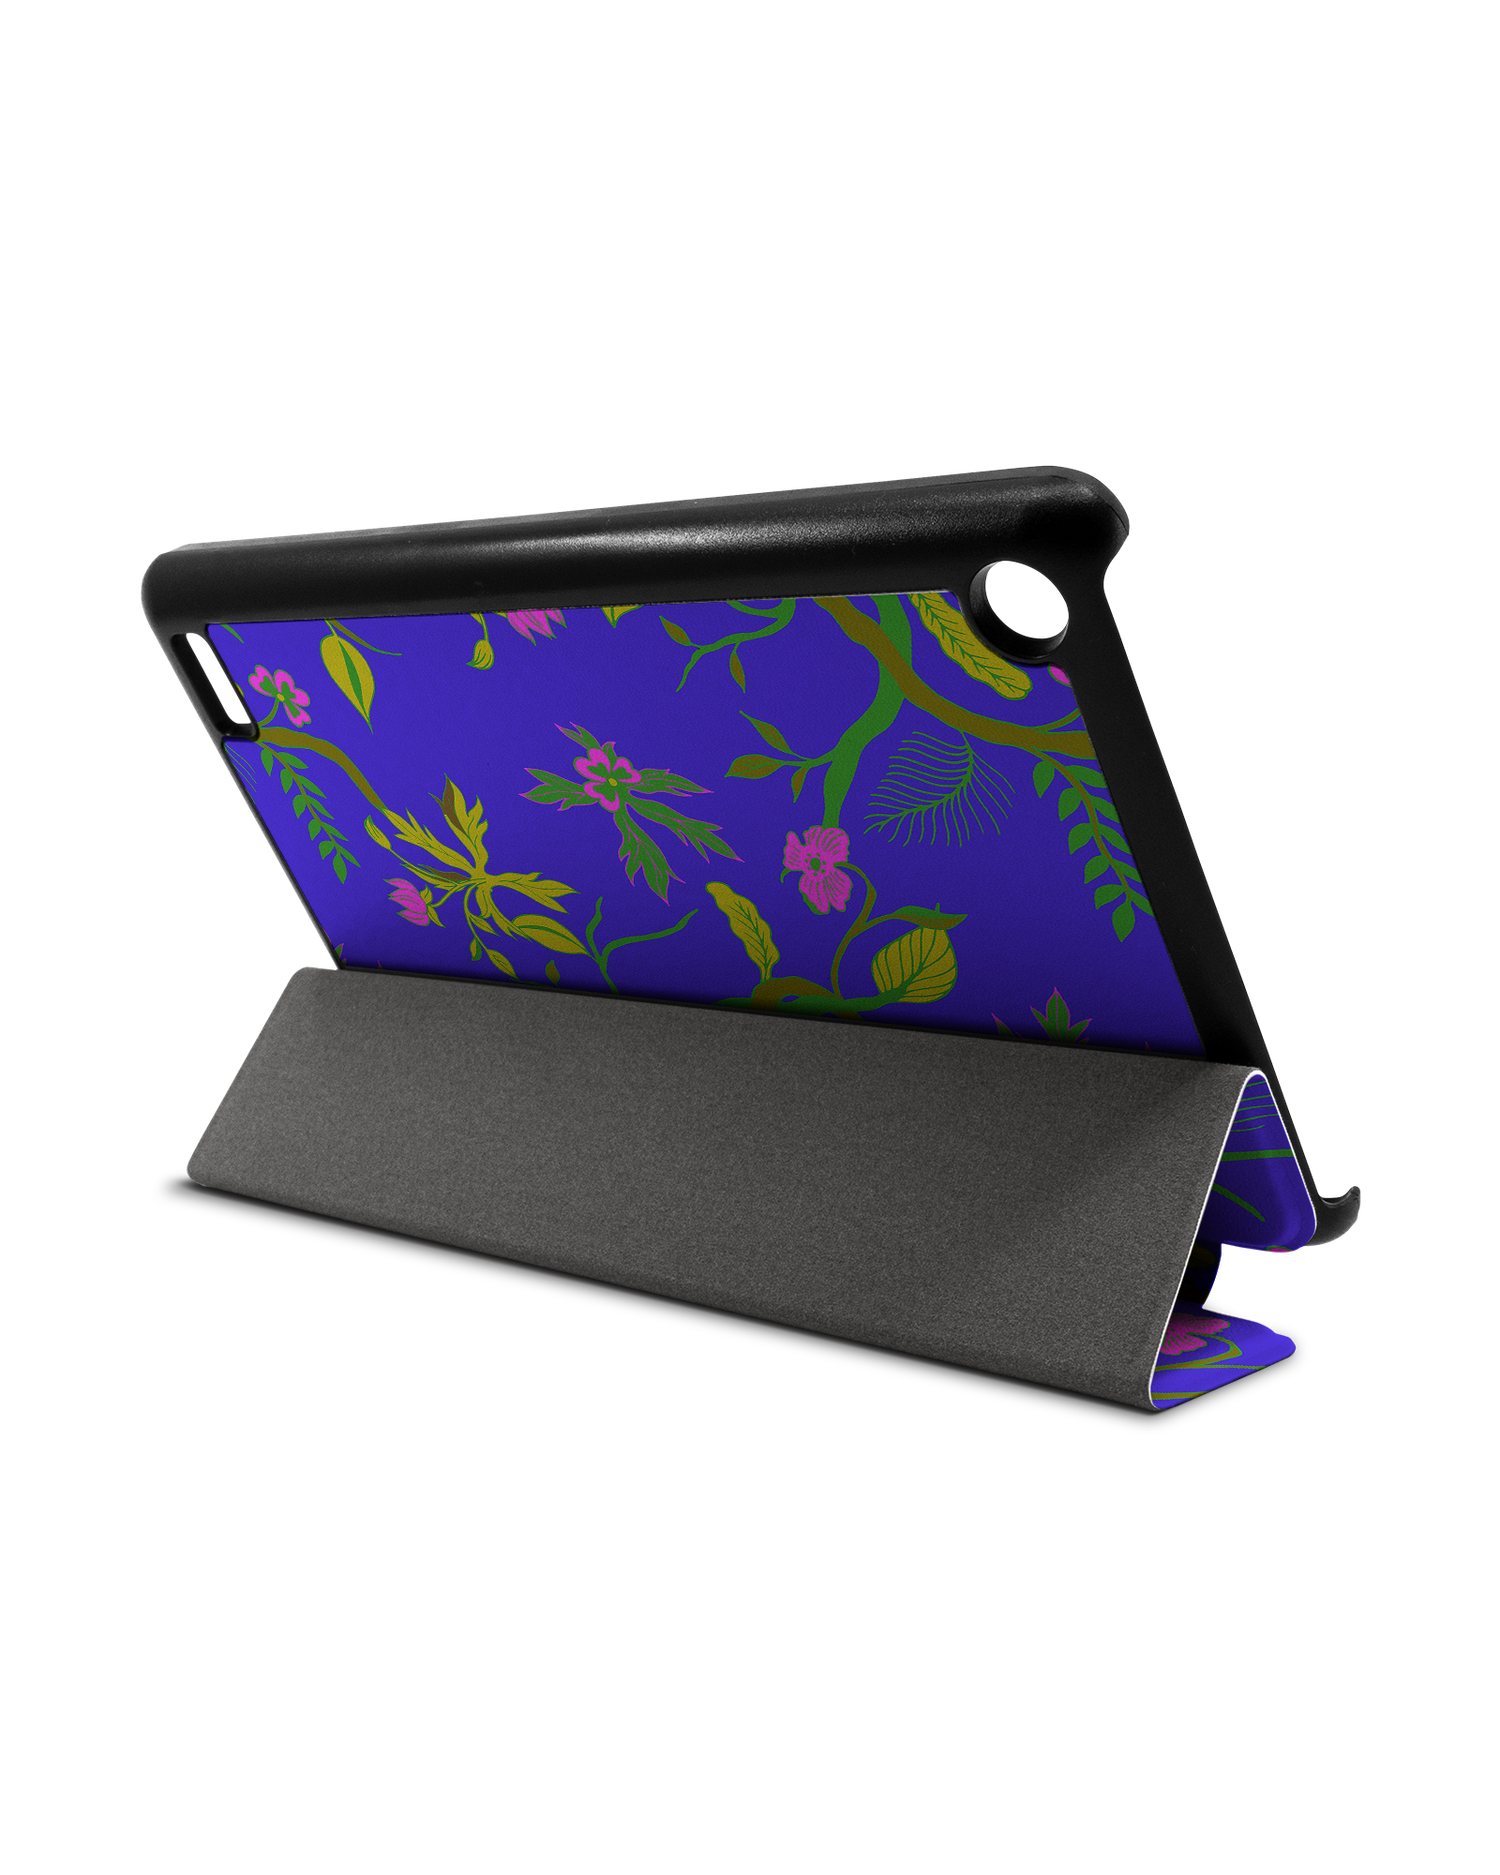 Ultra Violet Floral Tablet Smart Case für Amazon Fire 7: Aufgestellt im Querformat